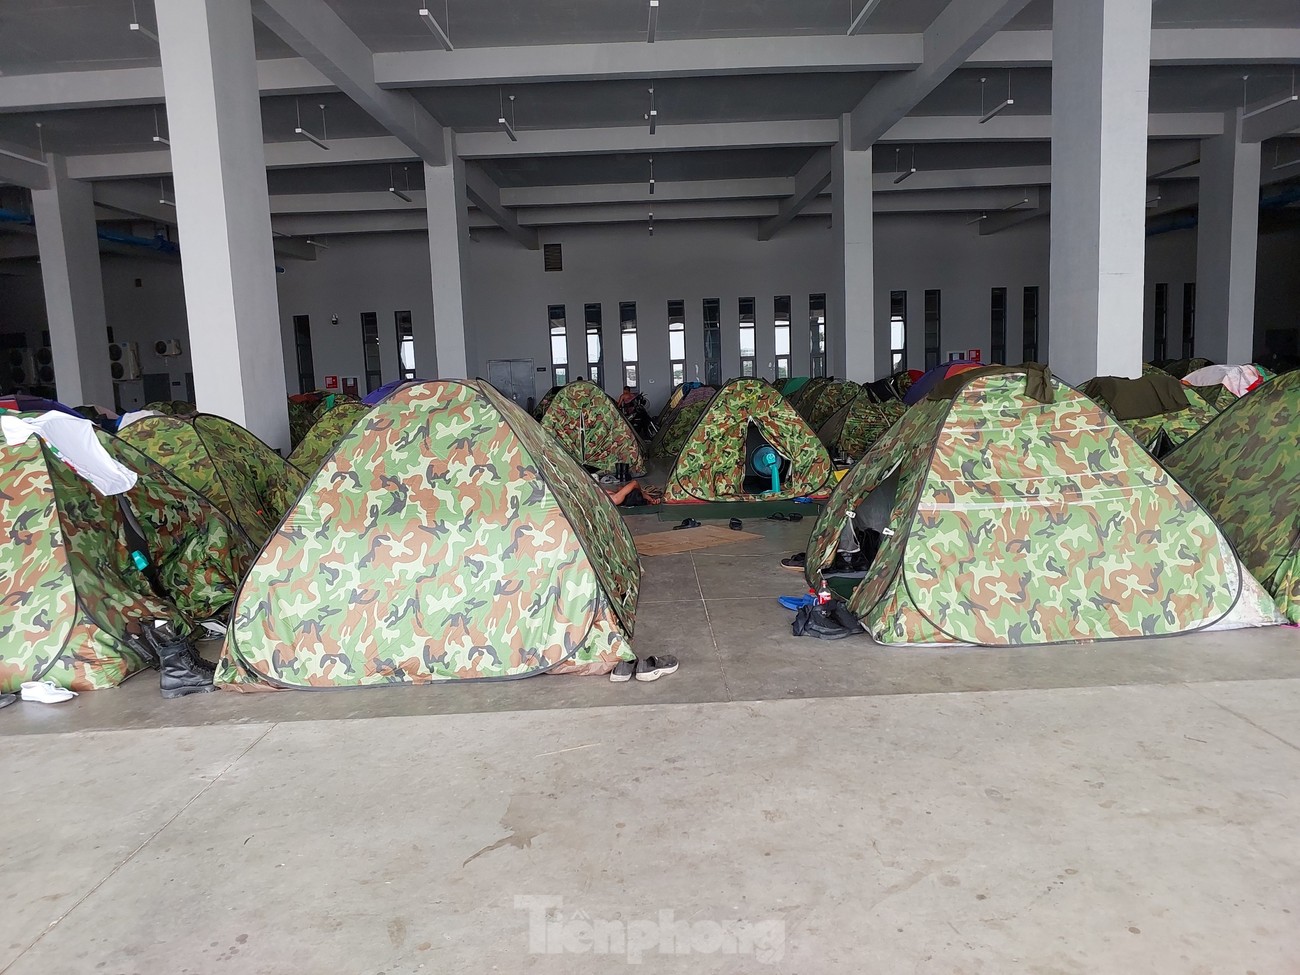 Bí mật những căn lều tạm đang nỗ lực tạo ra Lễ khai mạc SEA Games tầm cỡ Olympic của Campuchia ảnh 3